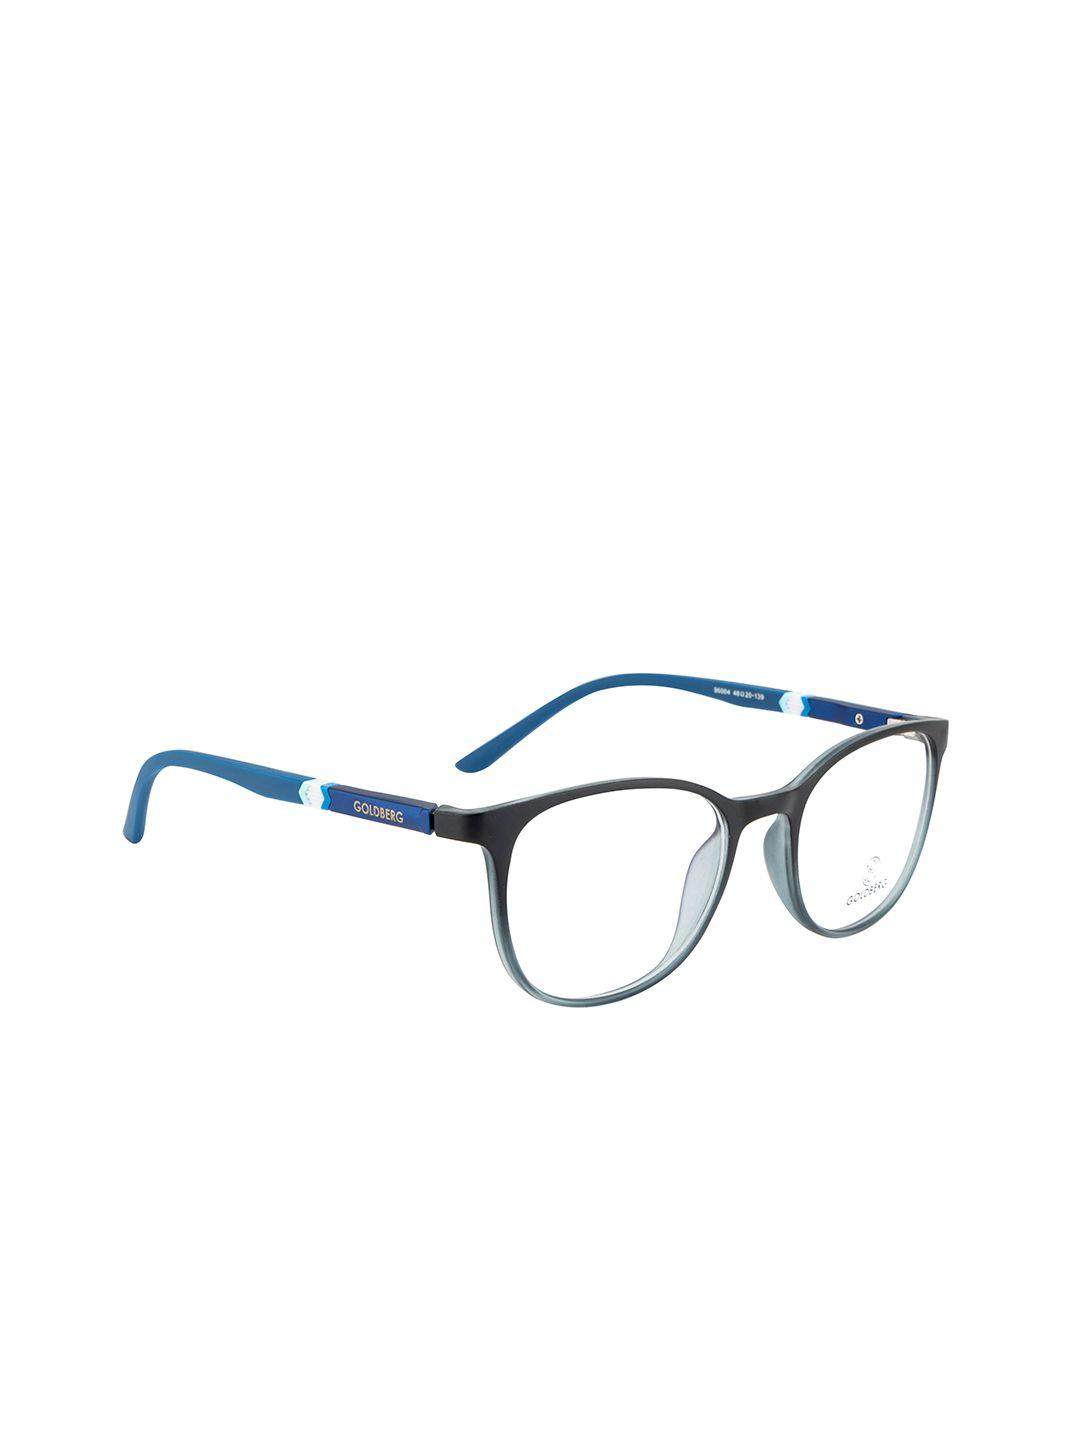 gold berg unisex black & blue full rim round frames eyeglasses